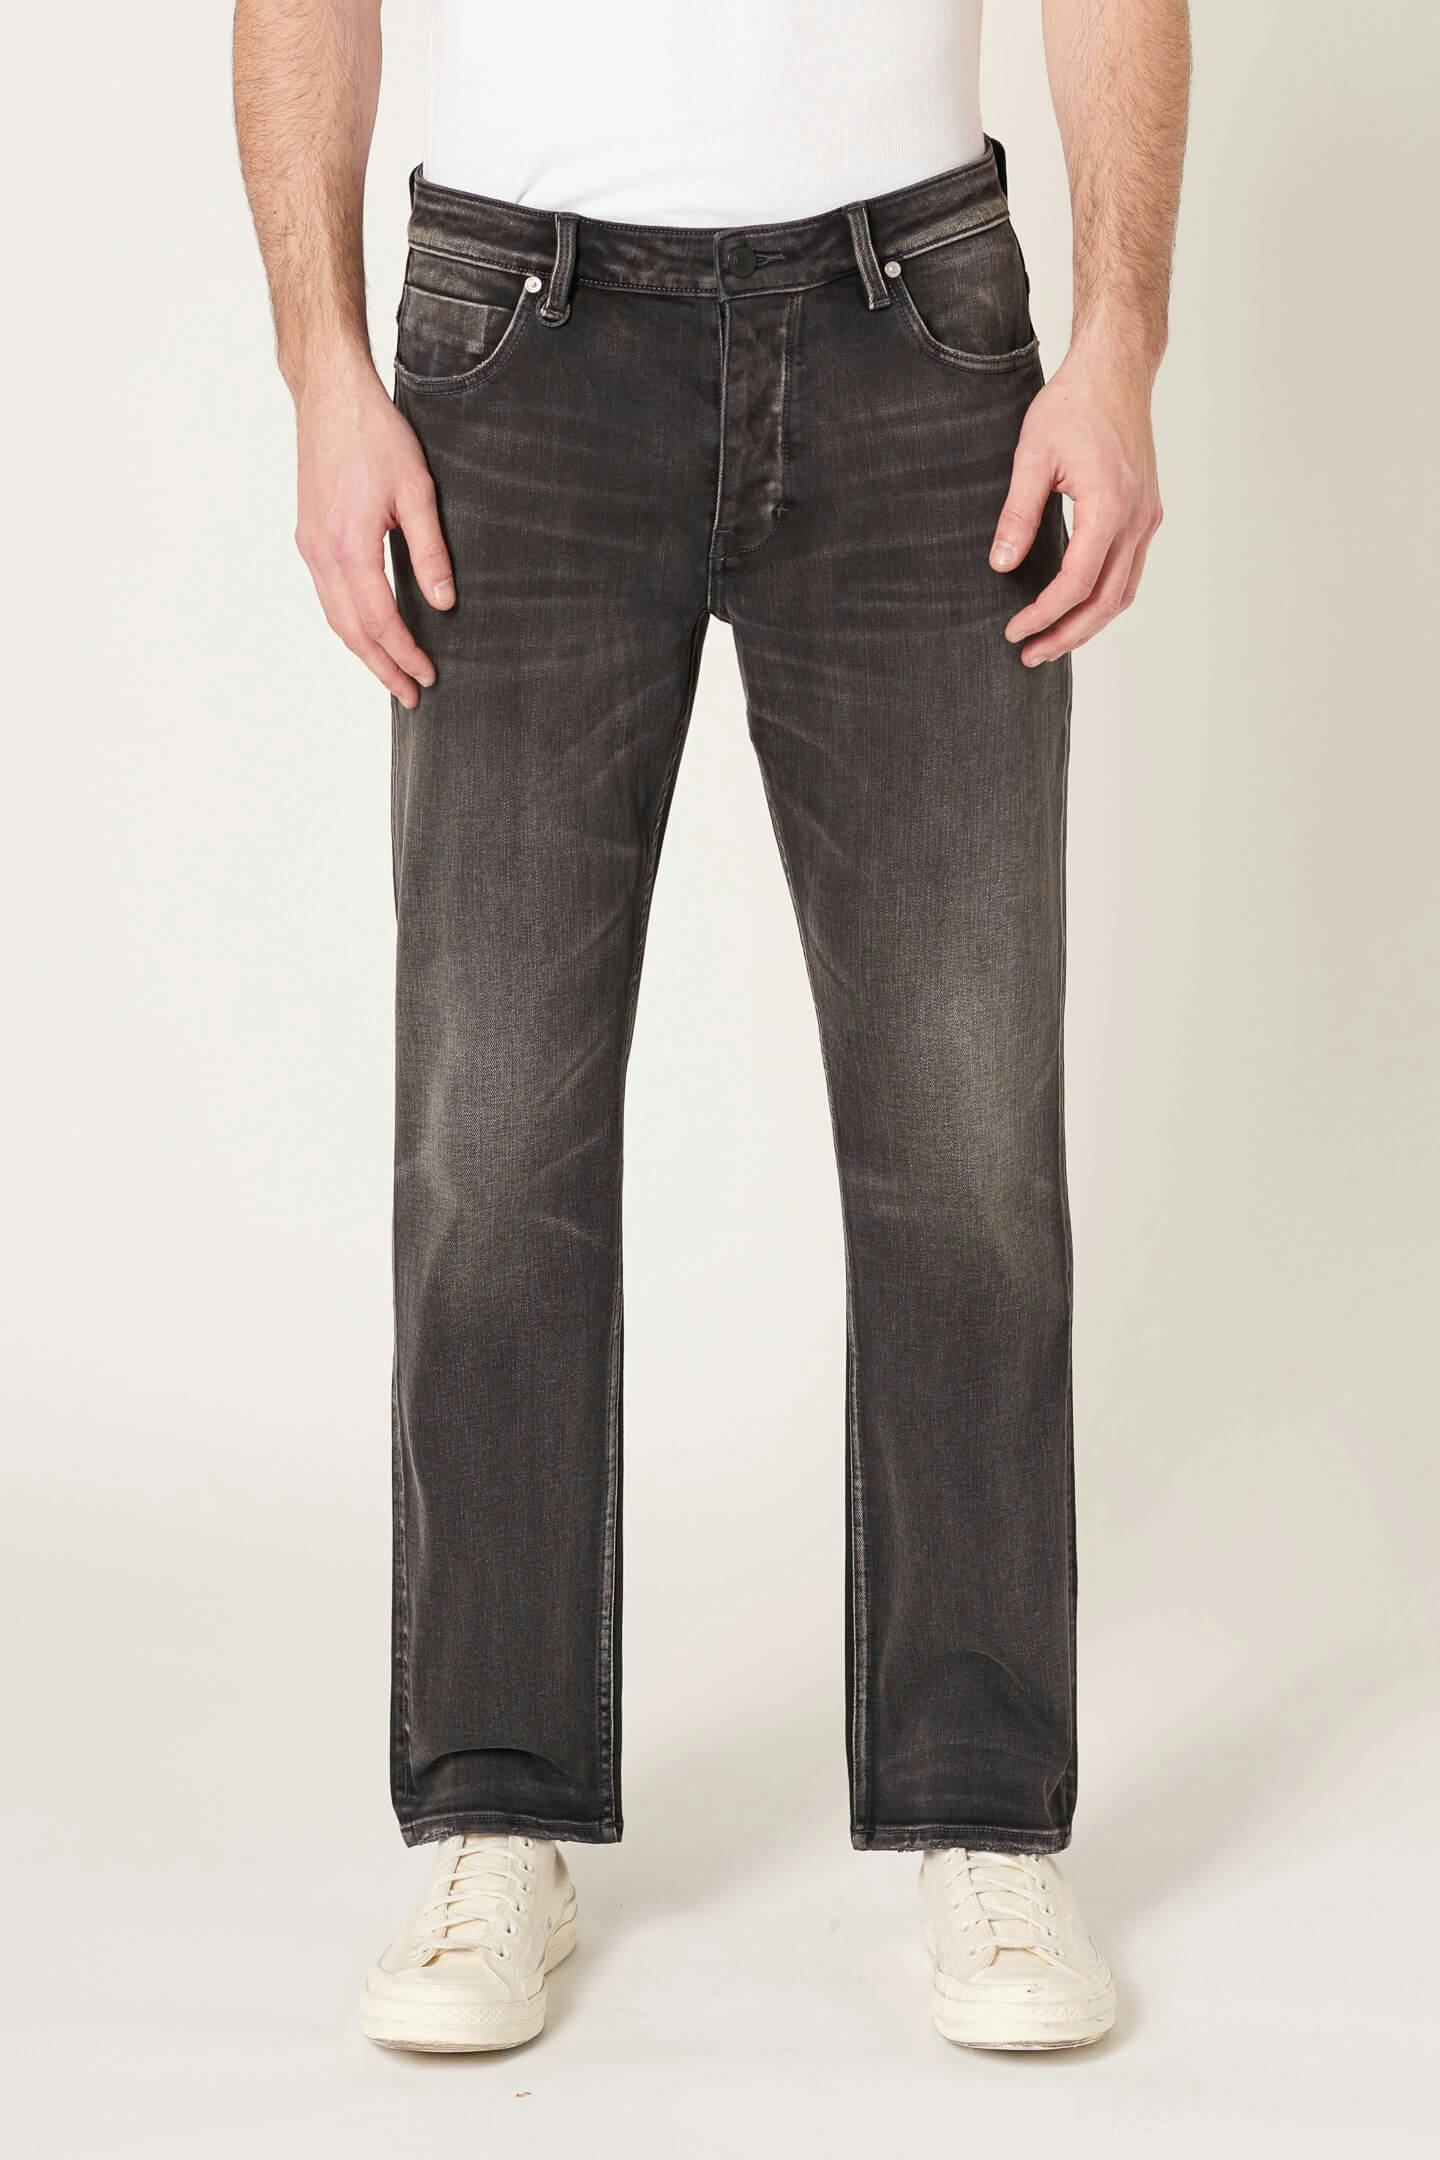 Lou Straight - Interzone Neuw dark grey mens-jeans 